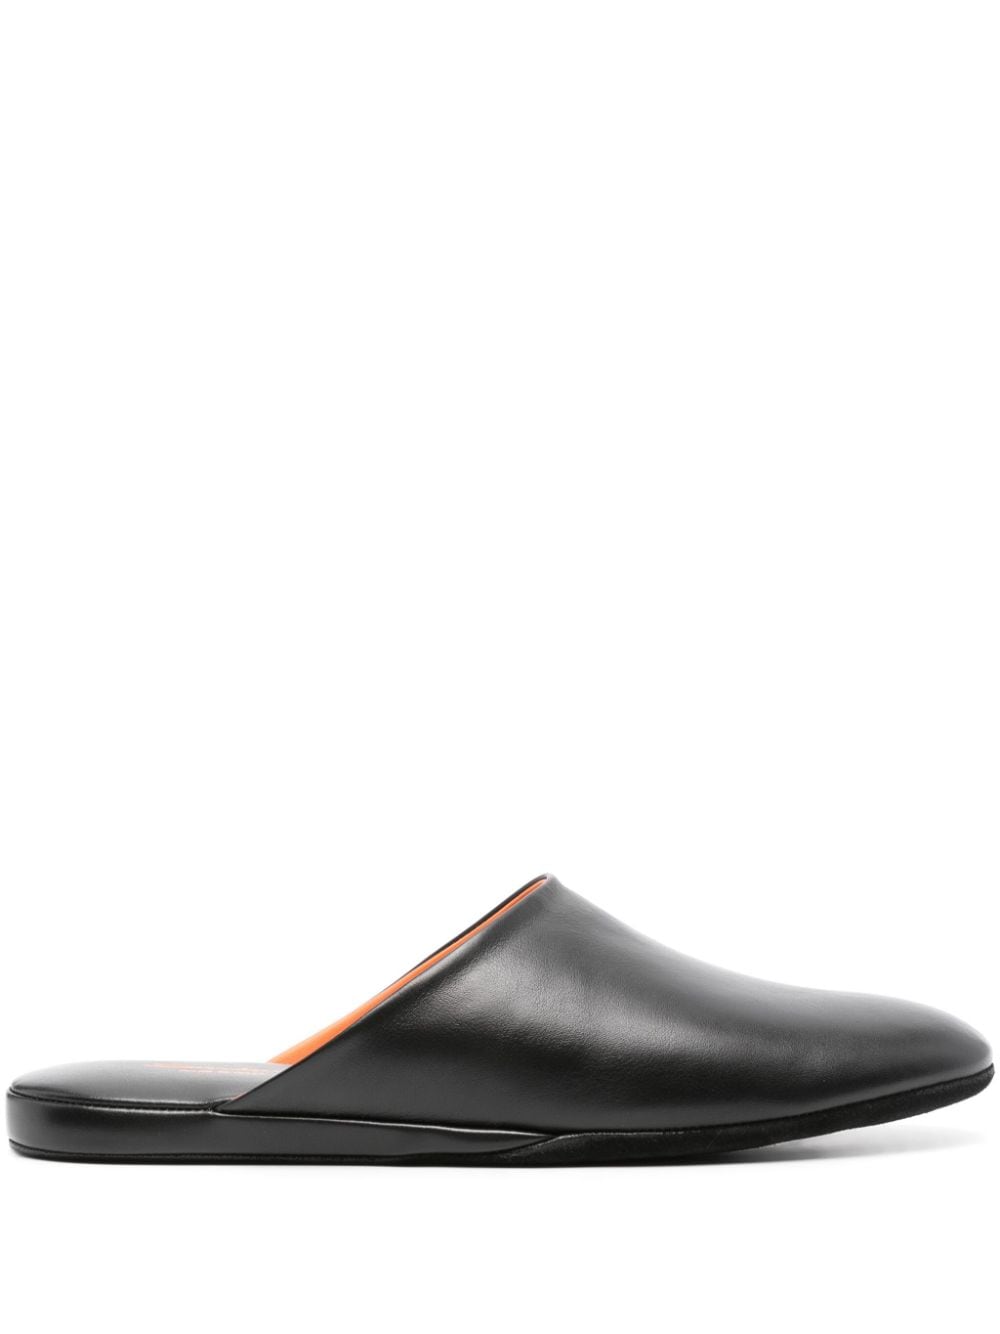 Santoni smooth leather slippers - Black von Santoni